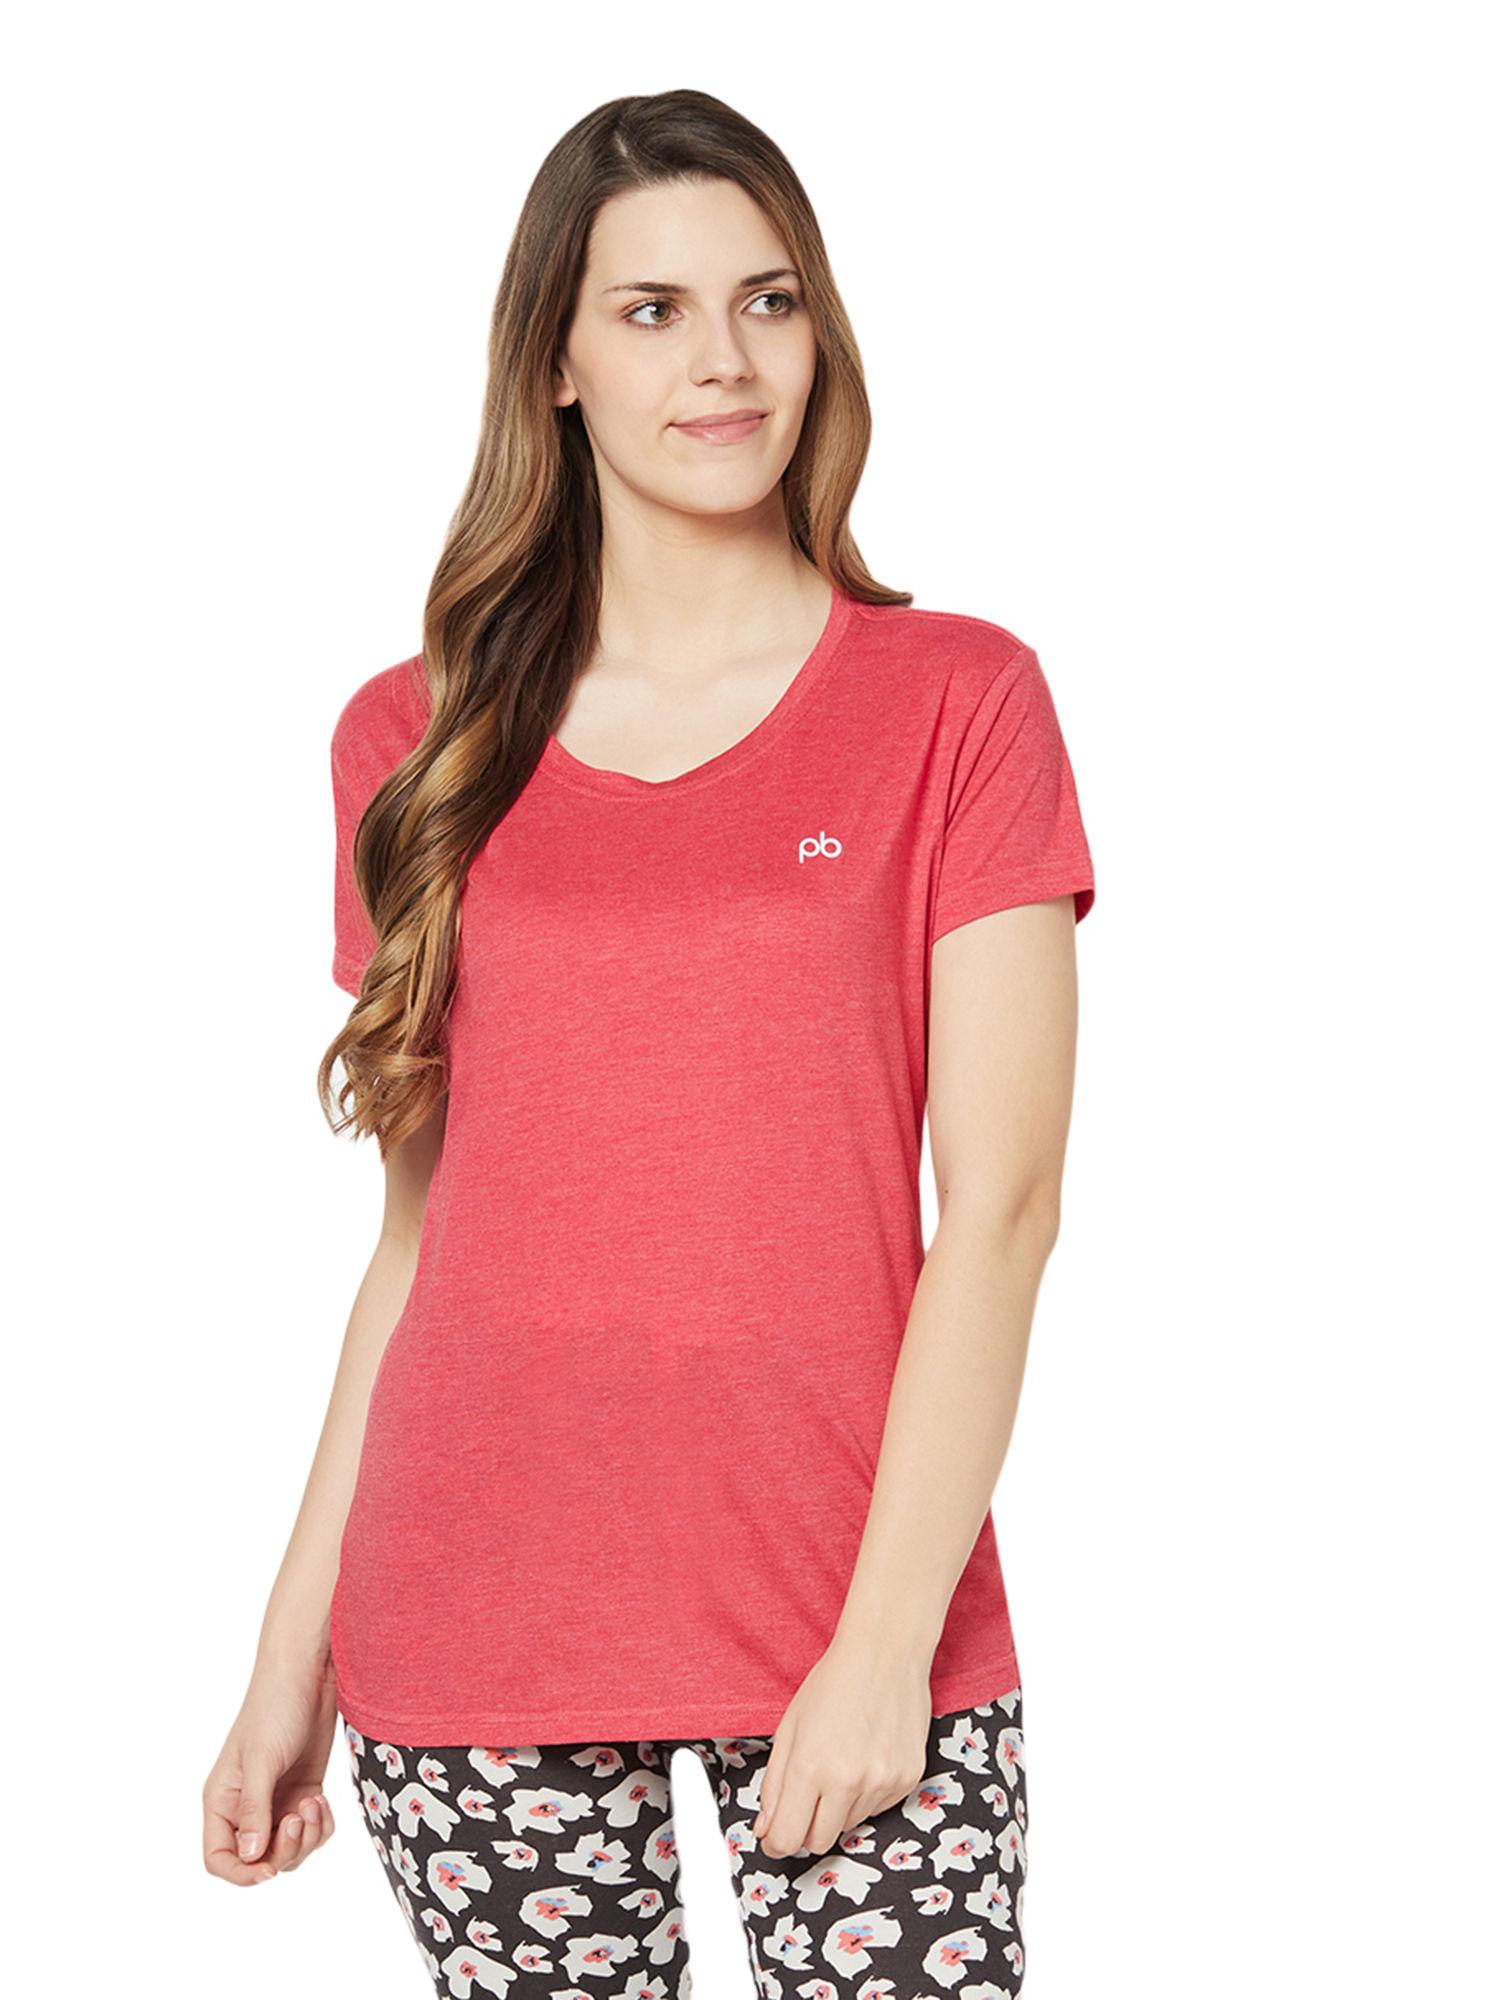 women's-cotton-rich-t-shirt---red